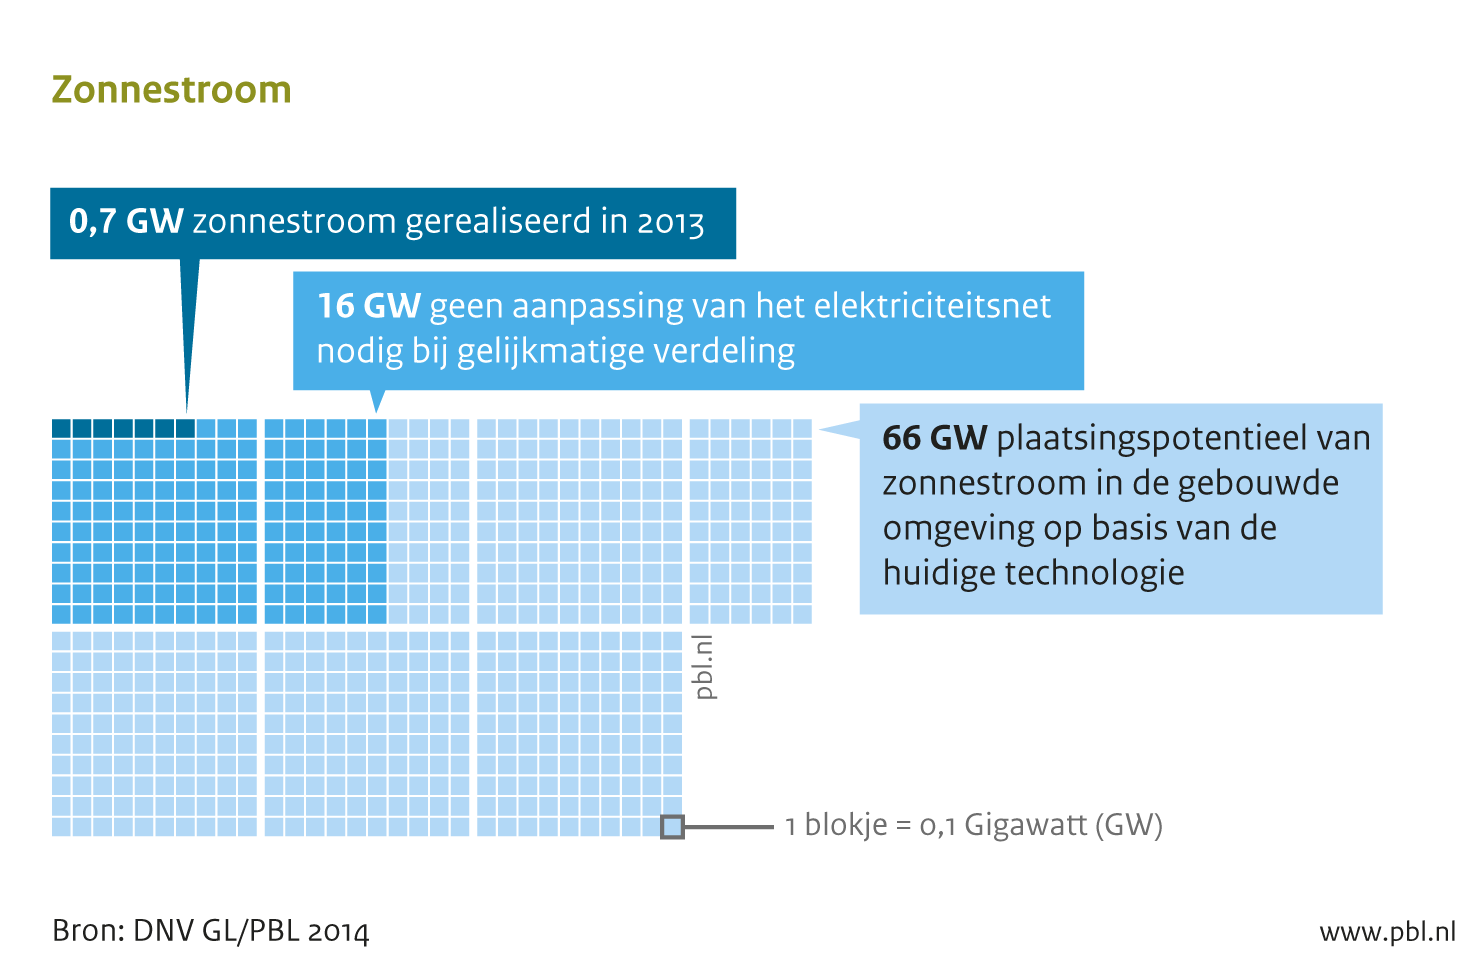 Innovatieve opties voor een CO2-arm energiesysteem - zoals zon-PV - hebben in 2013 nog een gering aandeel, maar zijn wel belangrijk voor een schone energievoorziening.